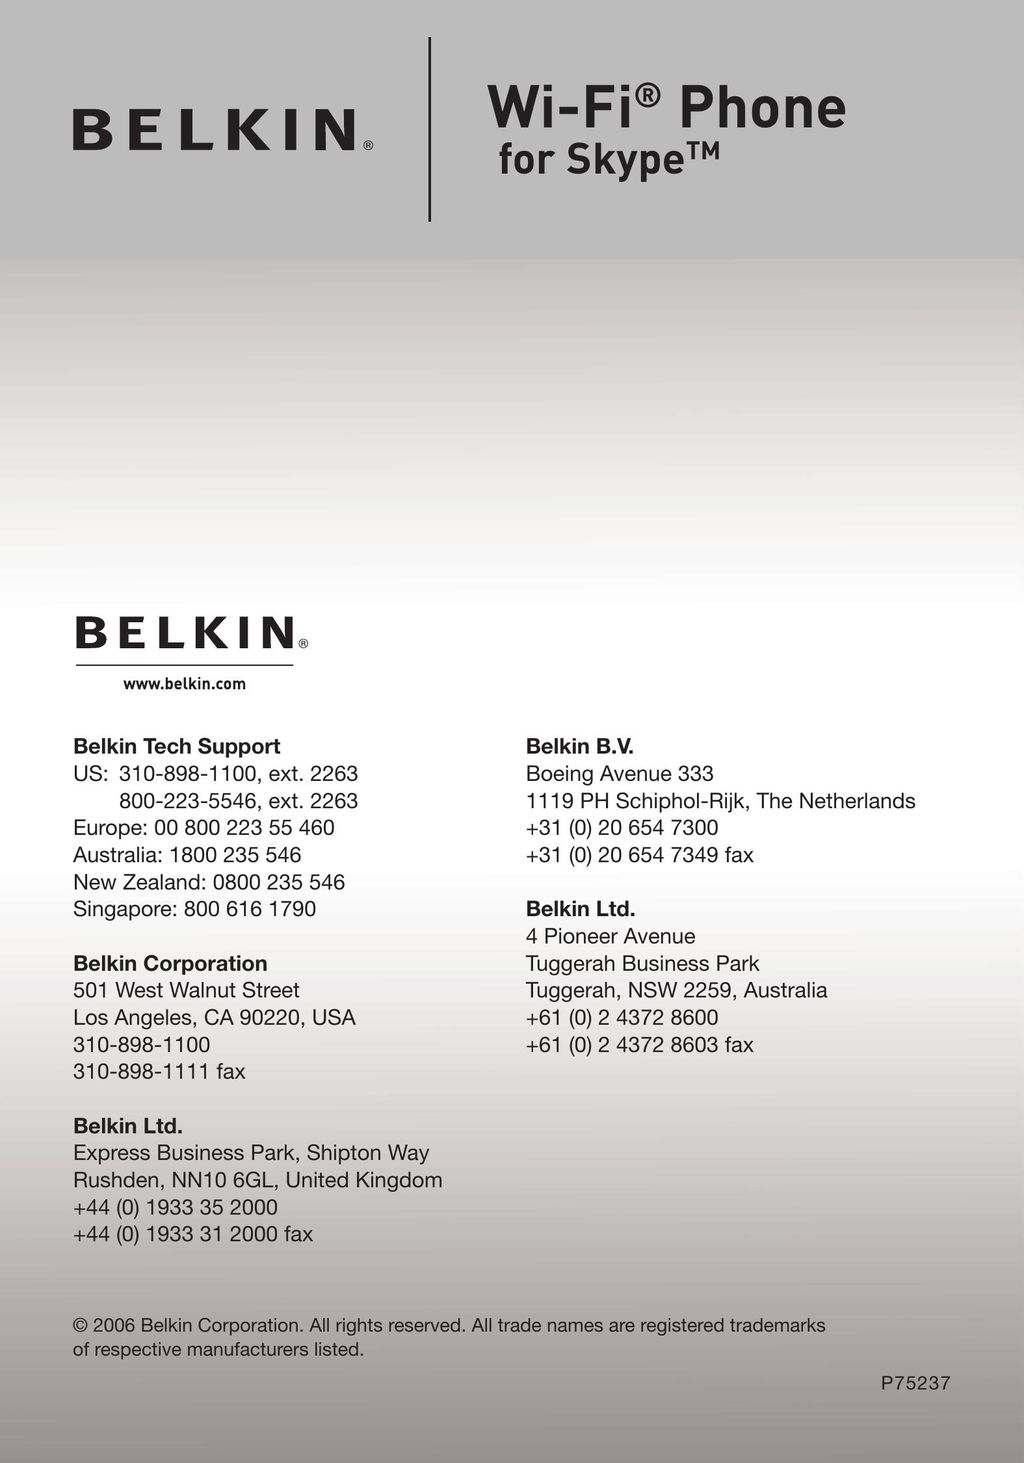 Belkin F1PP000GN-SK IP Phone User Manual